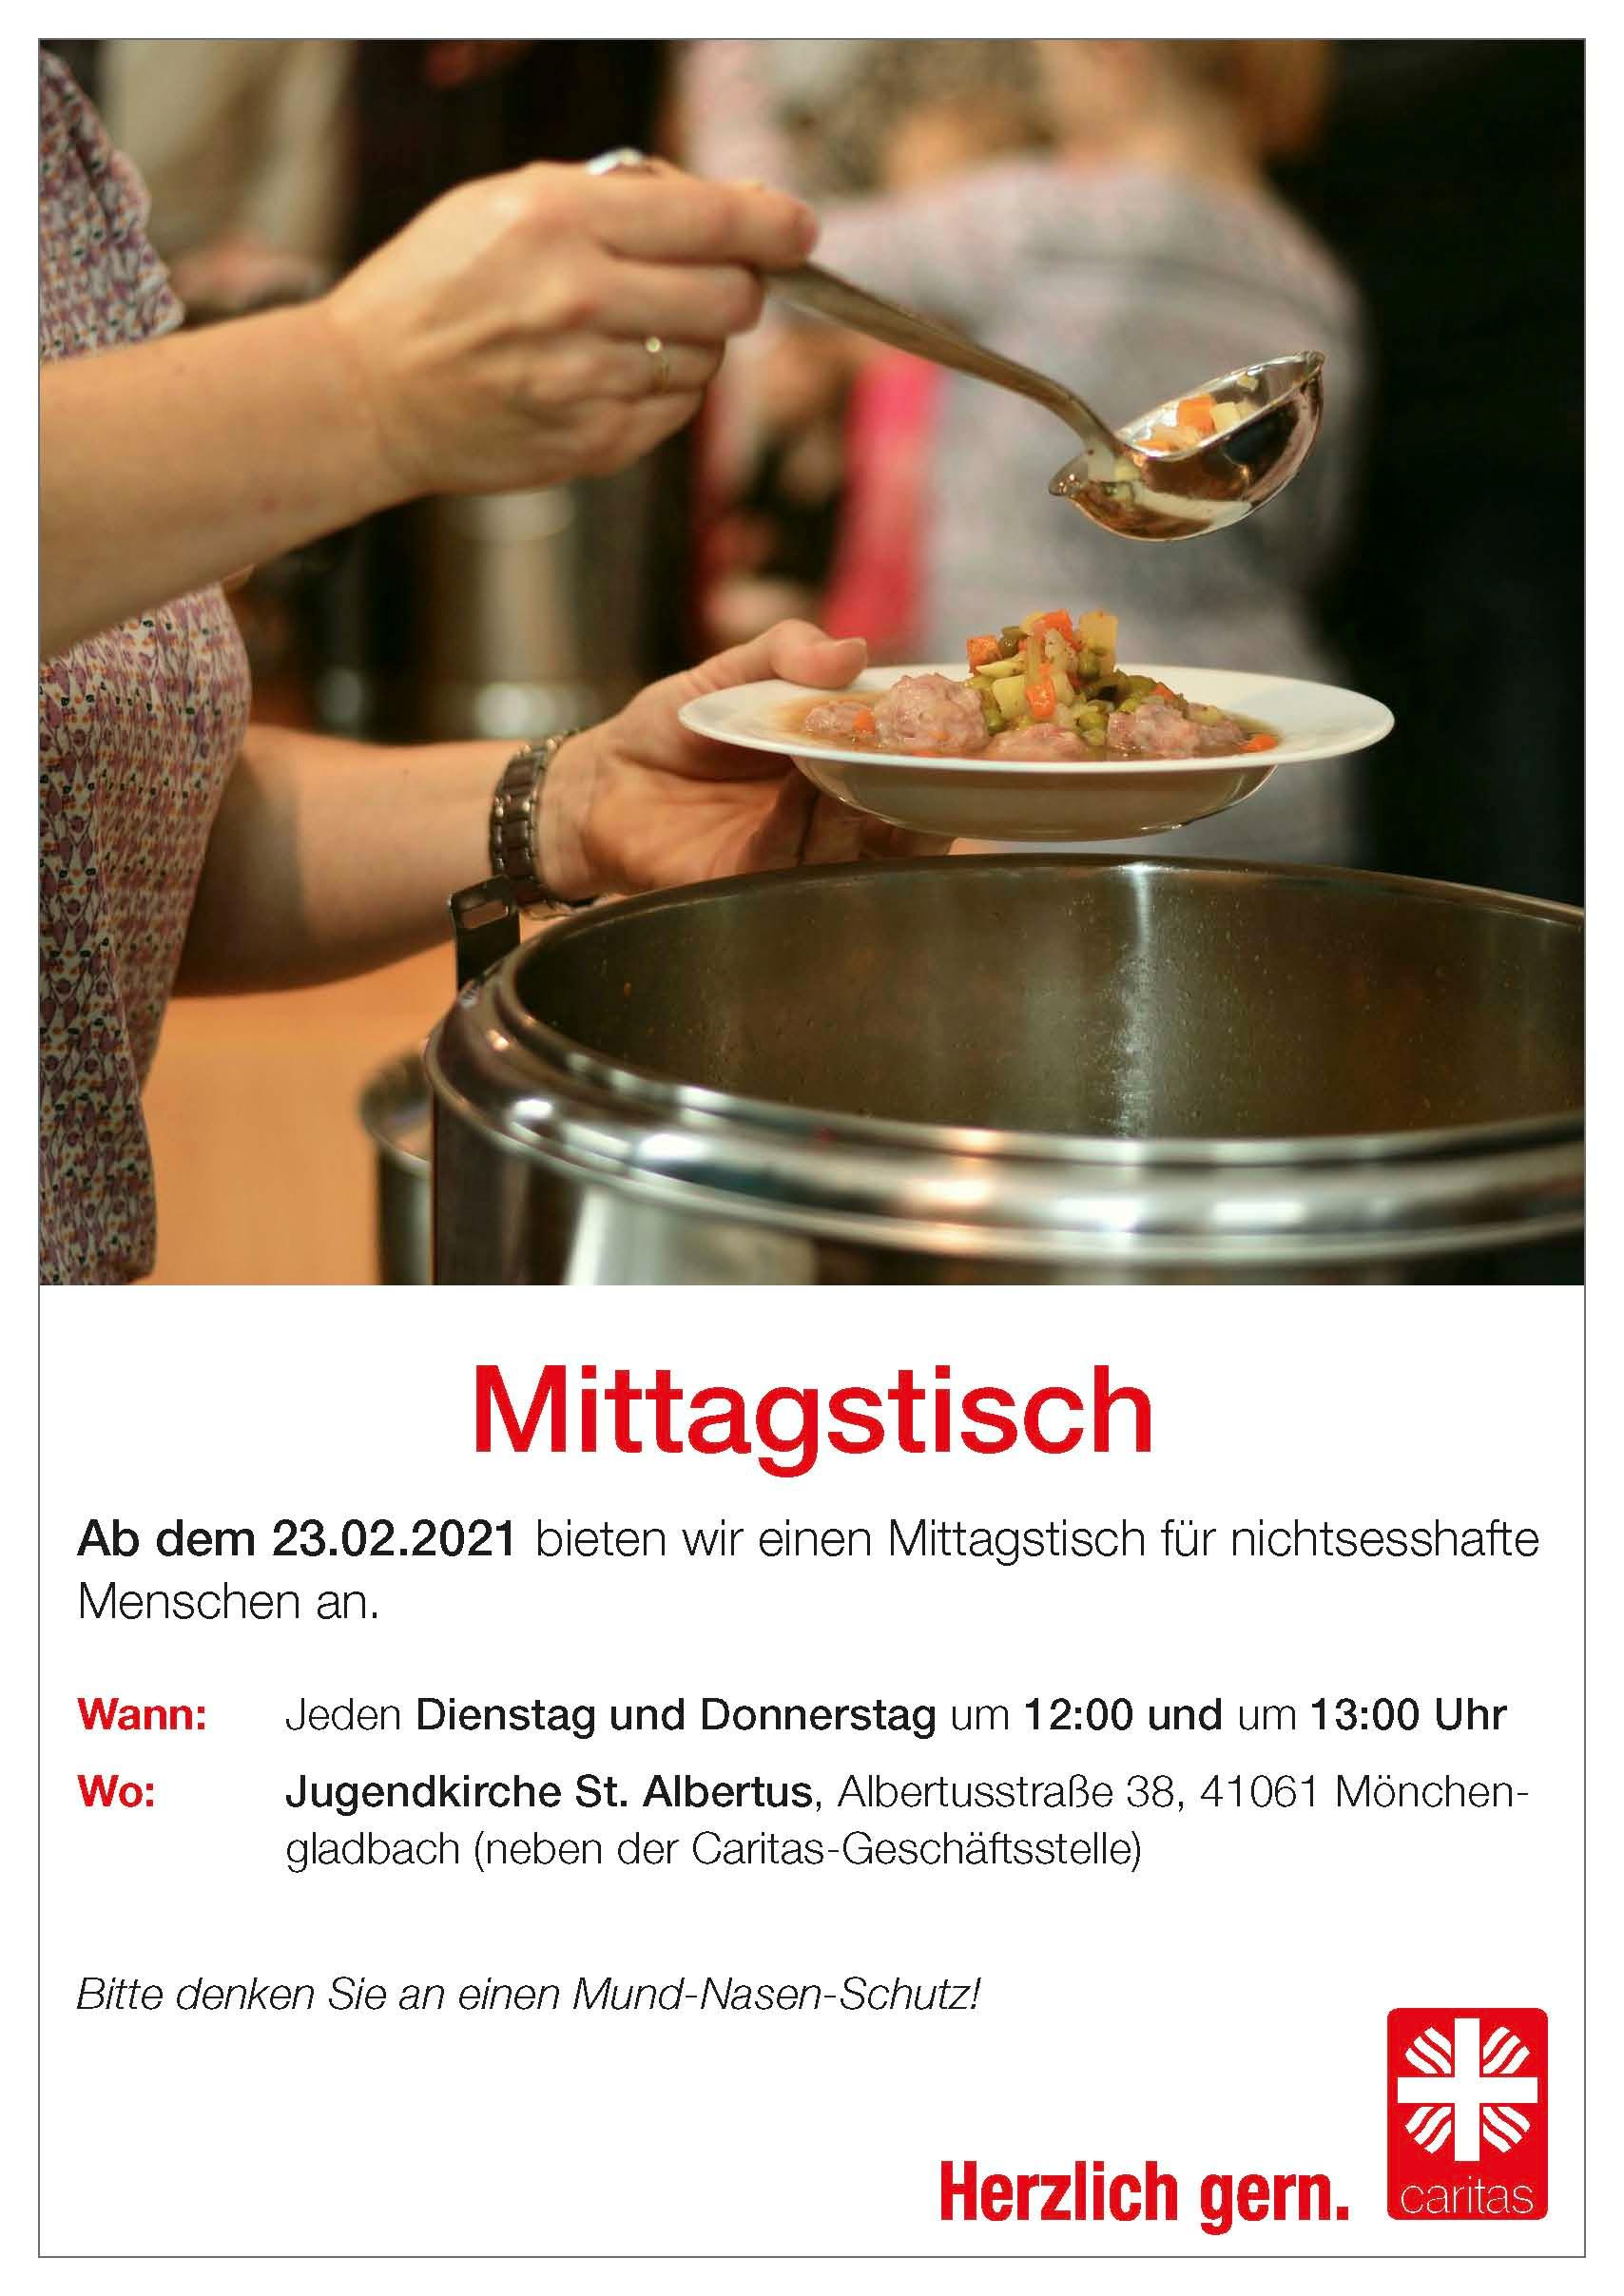 Plakat_Mittagstisch_neu_2021-02-23 (c) Caritasverband Region Mönchengladbach